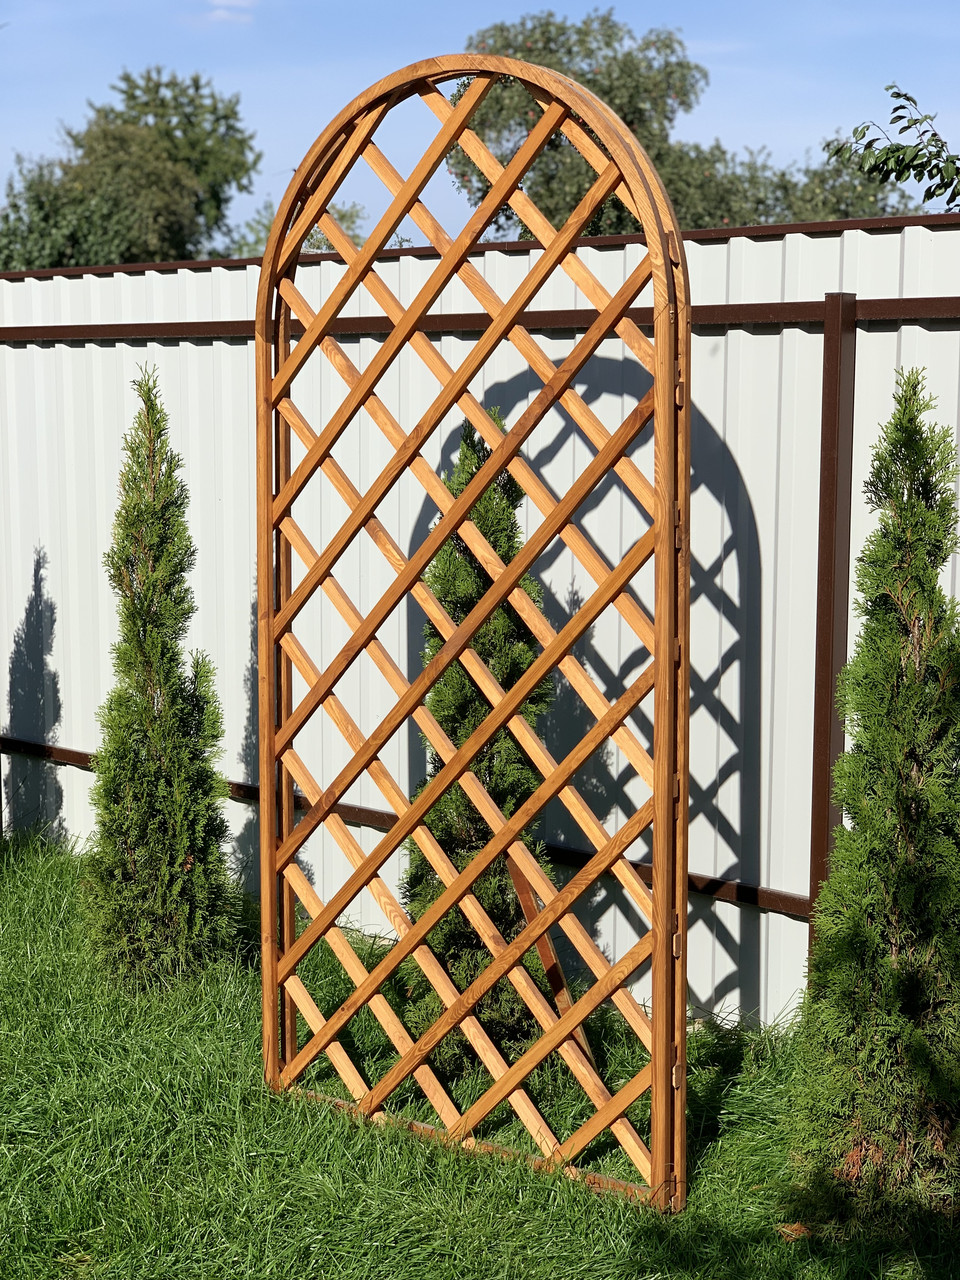 Решетка деревянная ( забор решетчатый, решетка для беседки).